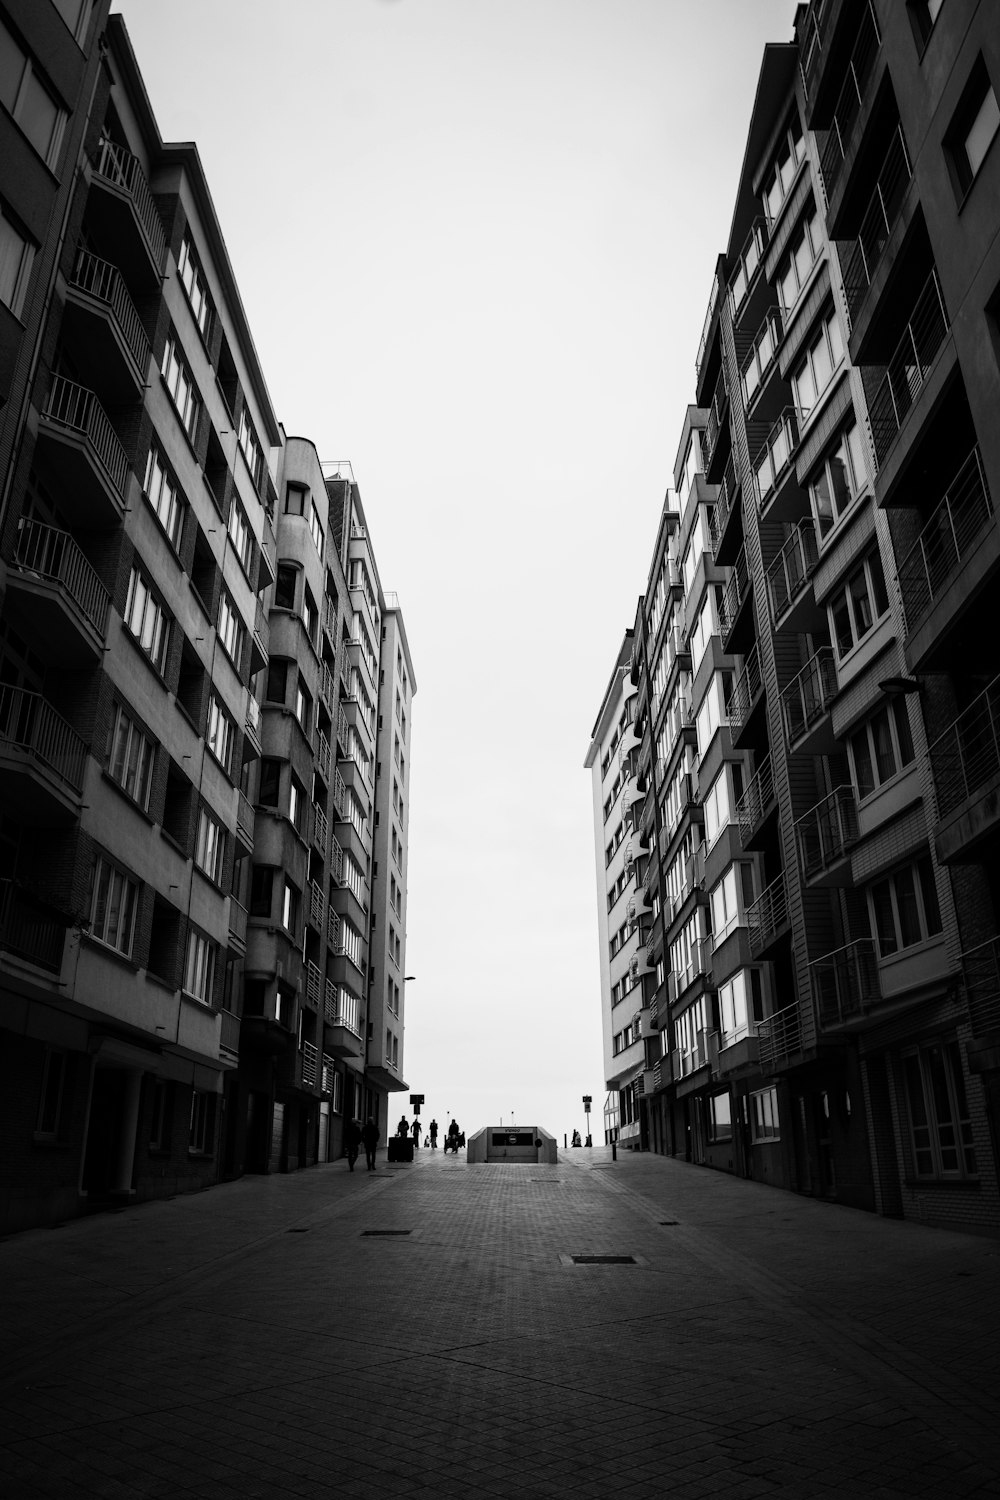 Photo en niveaux de gris de personnes marchant dans la rue entre des immeubles de grande hauteur